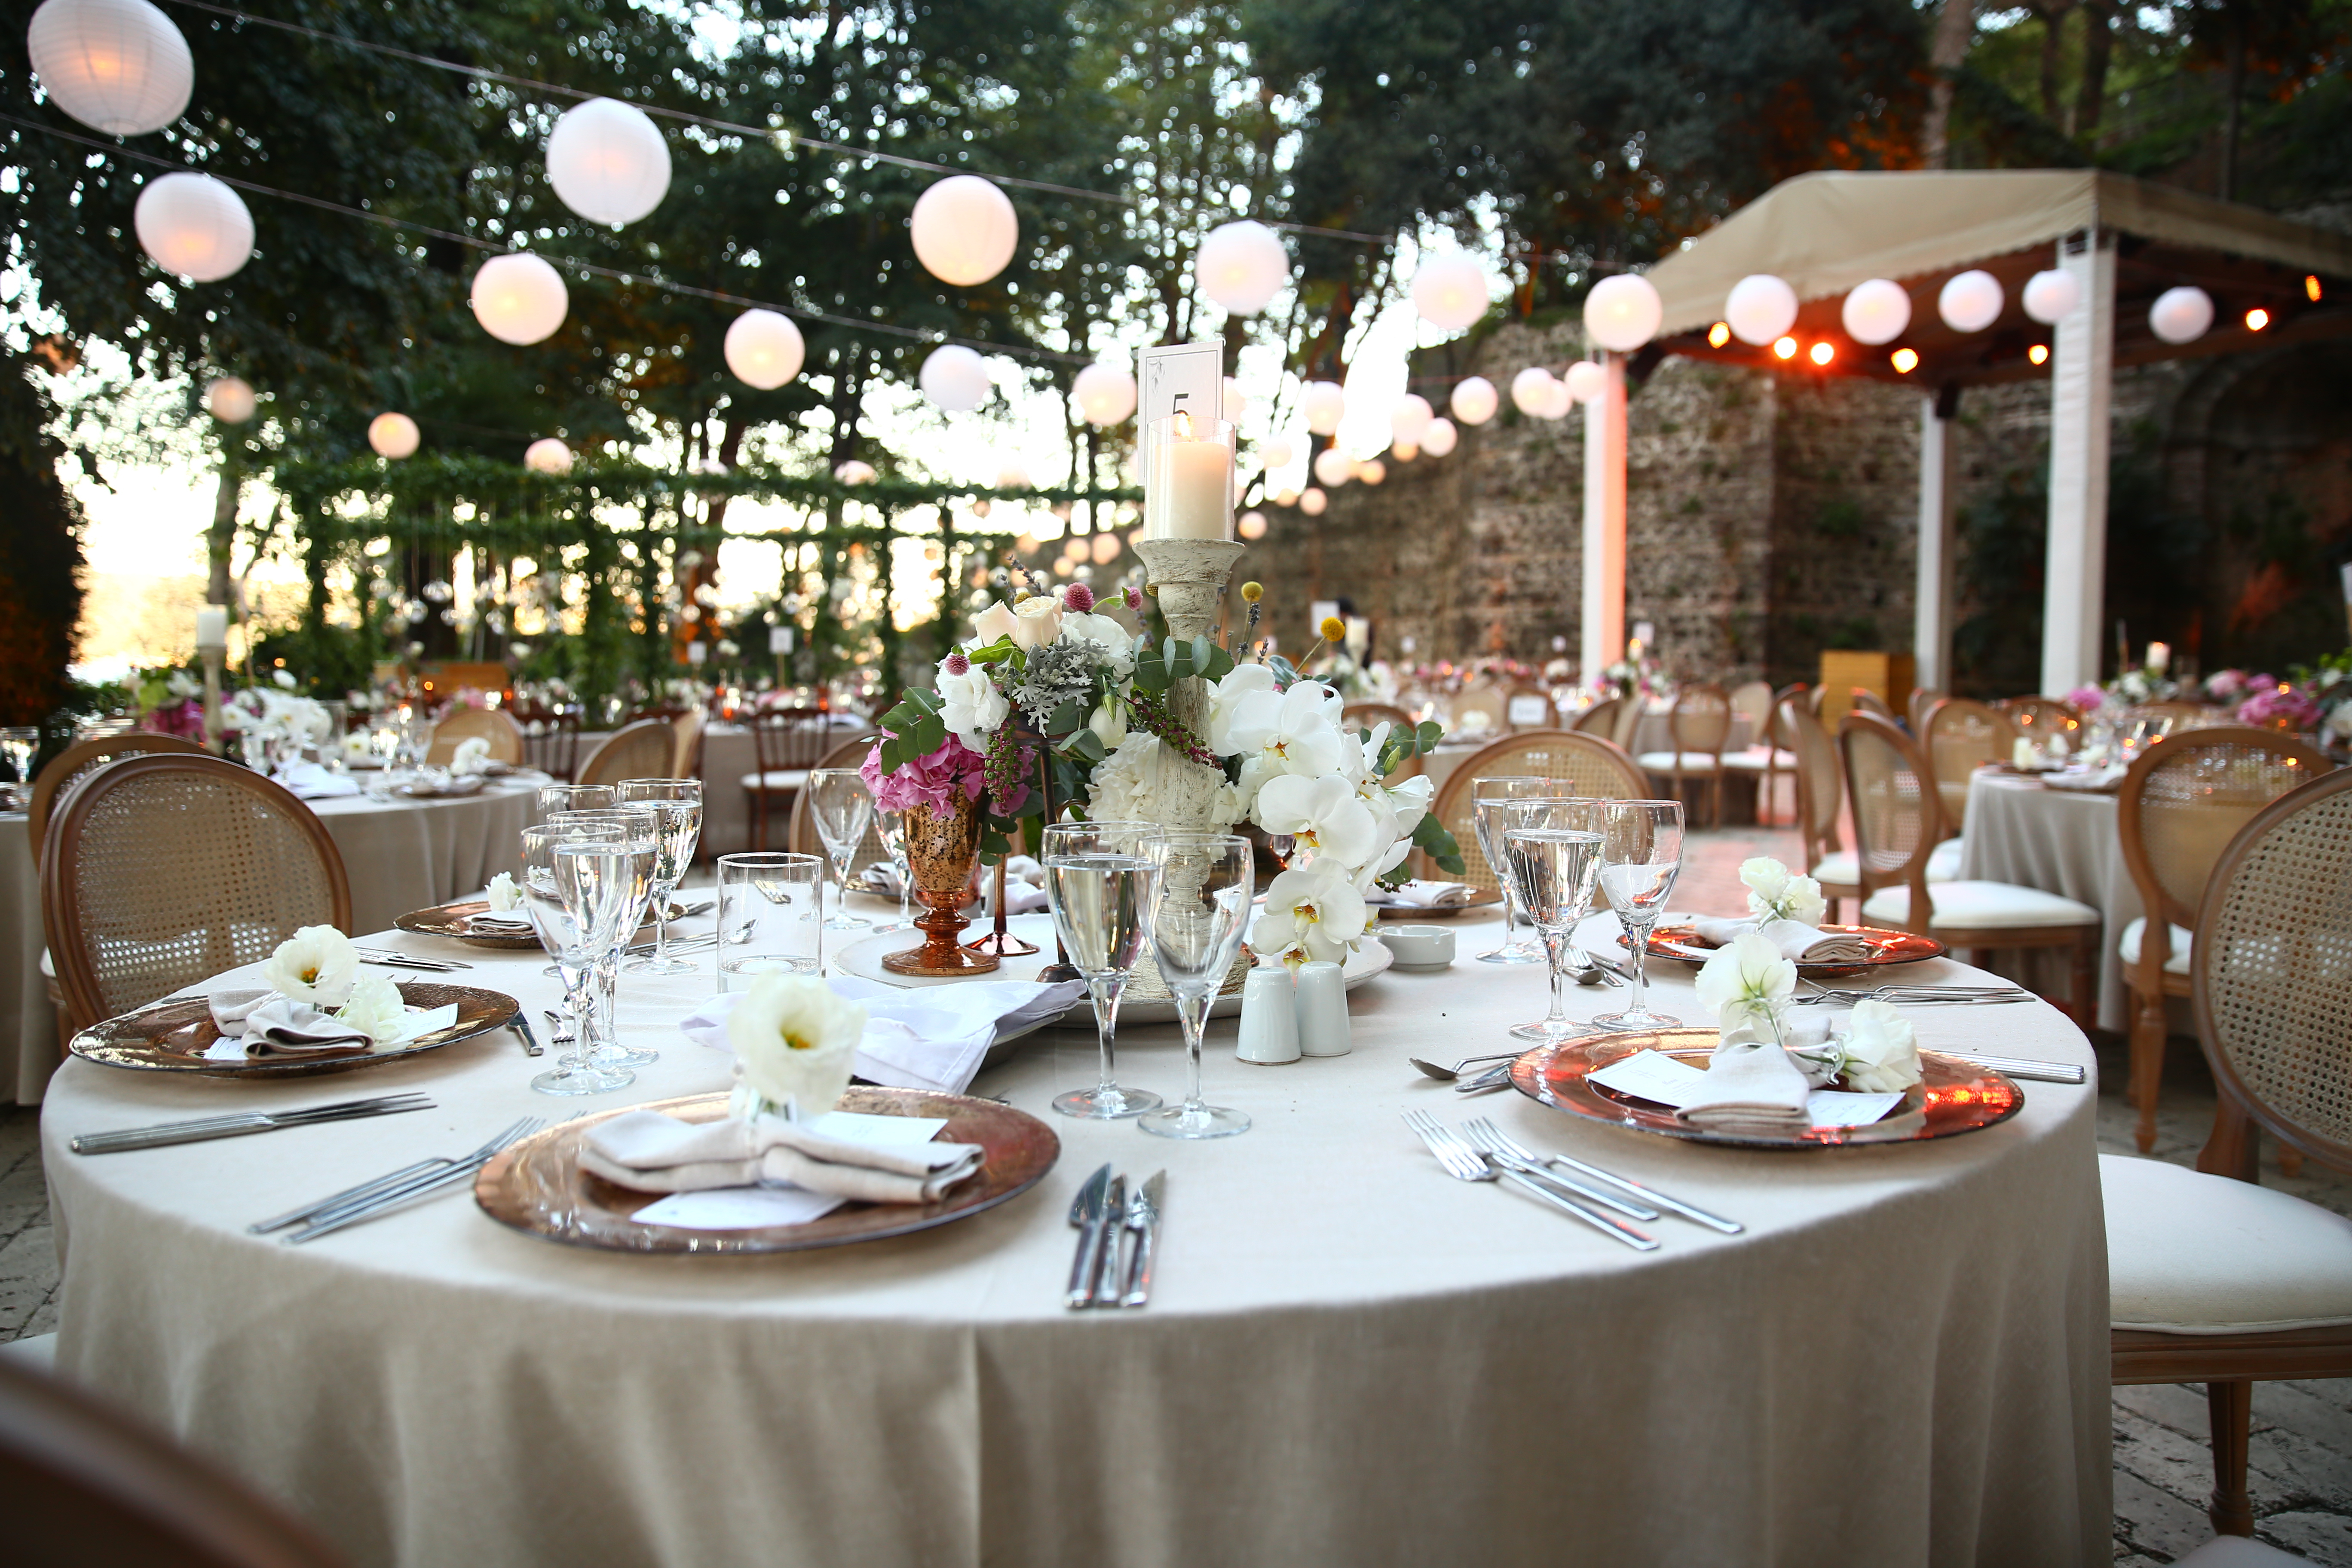 Une réception de mariage | Source : Shutterstock